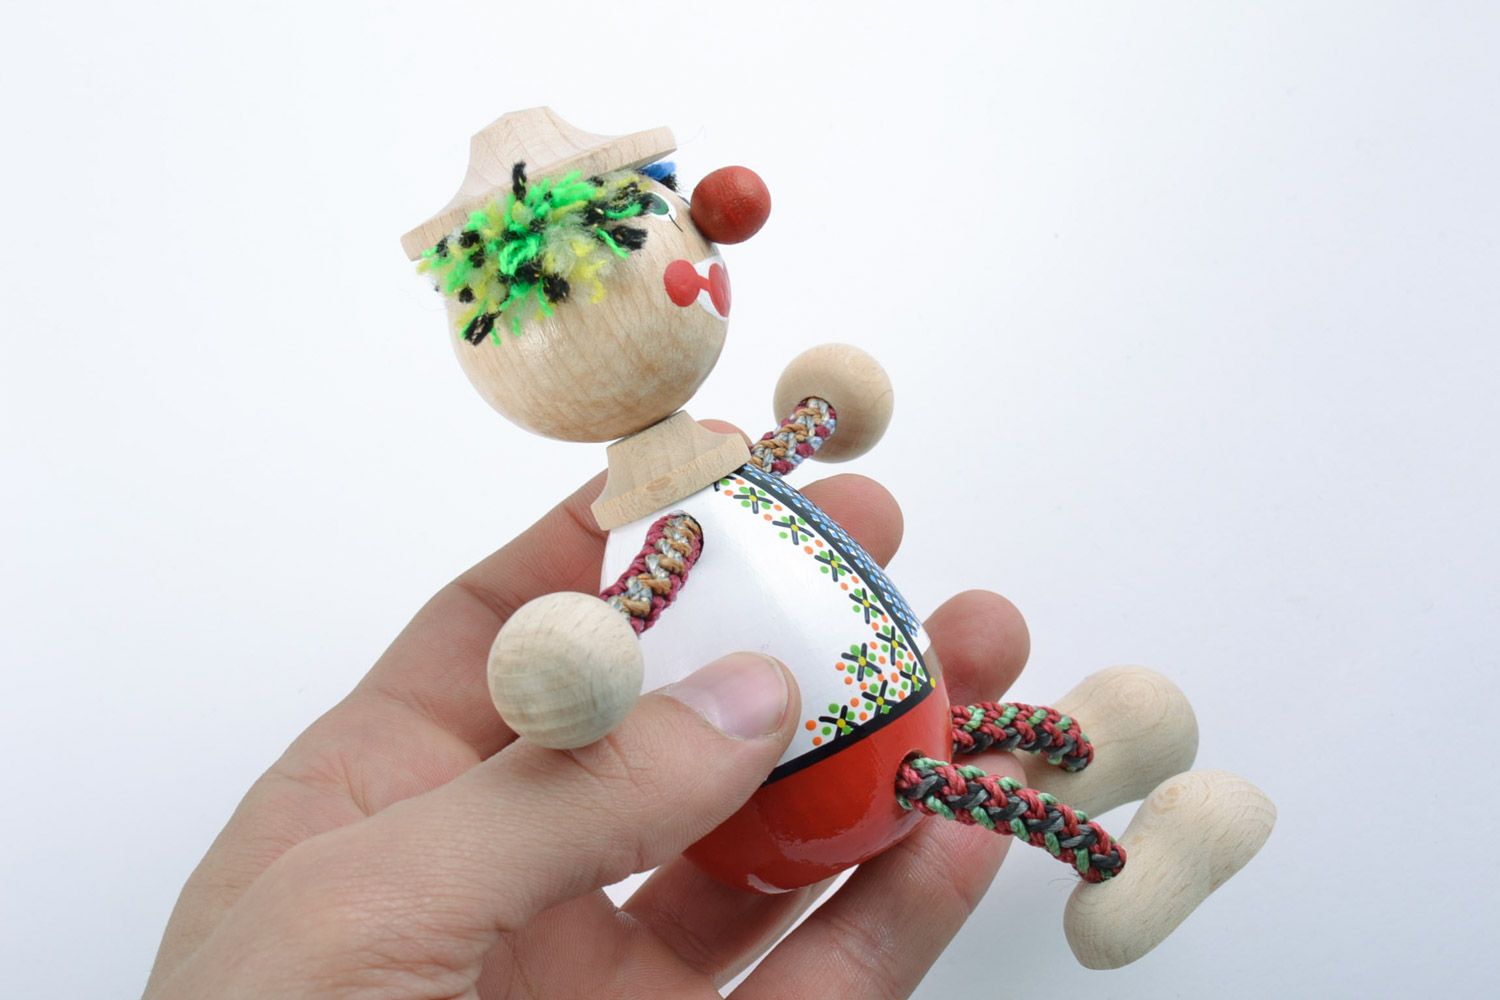 Детская игрушка из дерева расписанная красками ручной работы в виде яркого клоуна фото 2